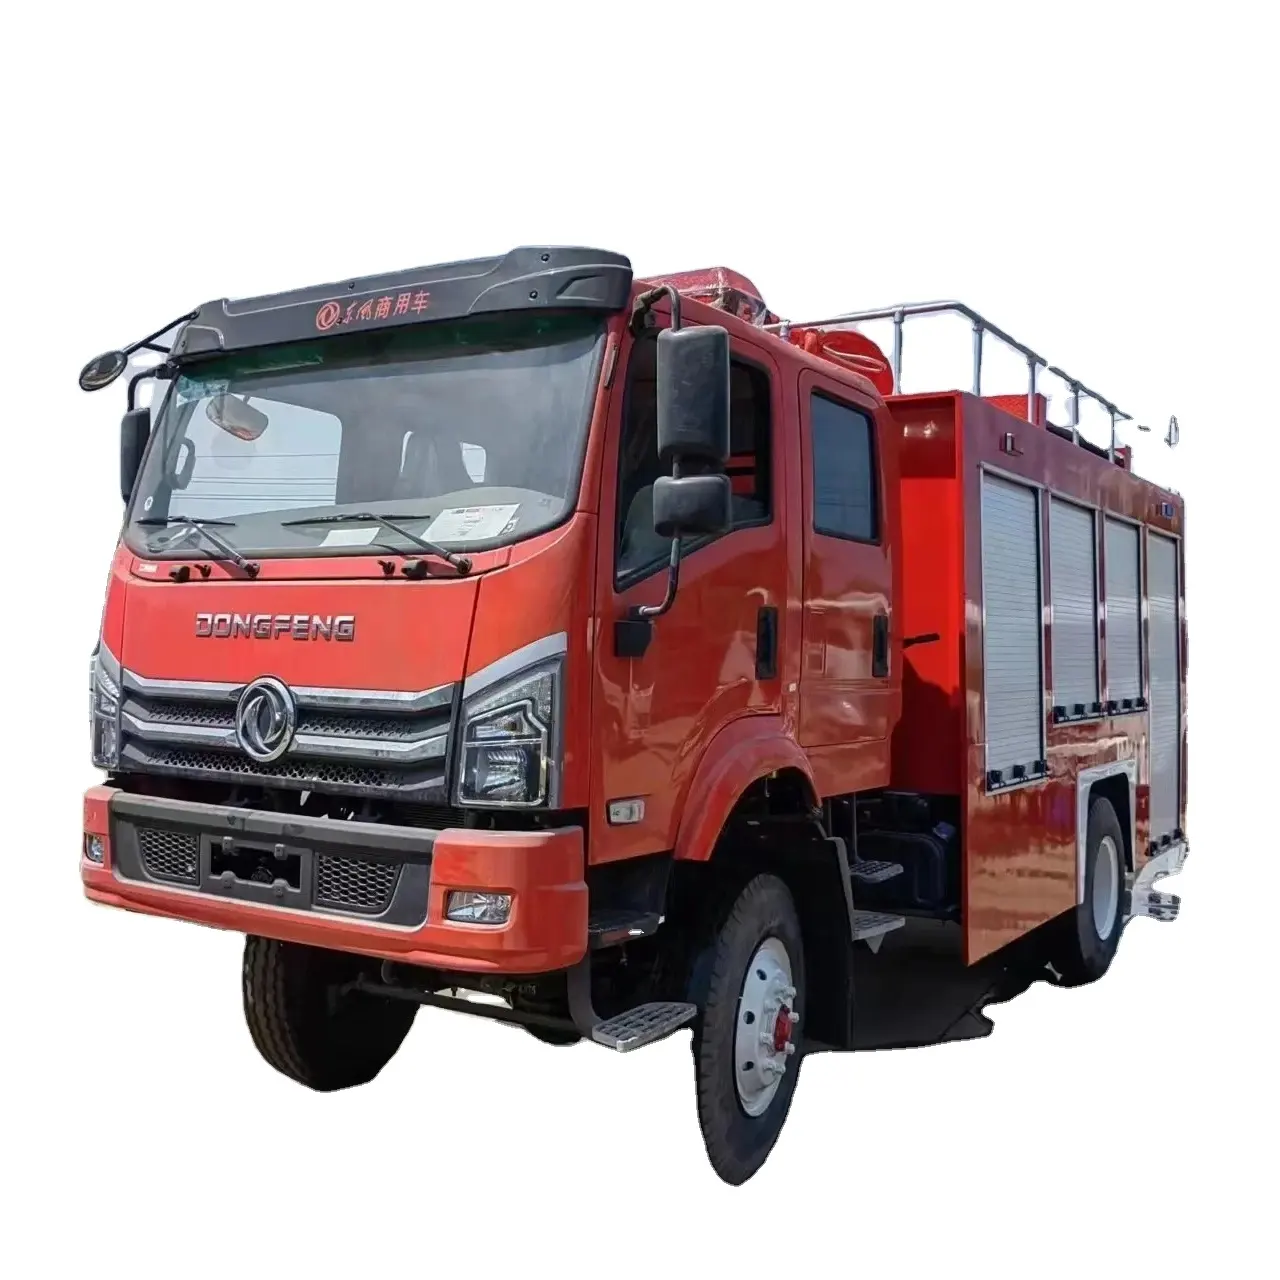 東風消防車それは主に消防活動と緊急救助ミッションに使用されます